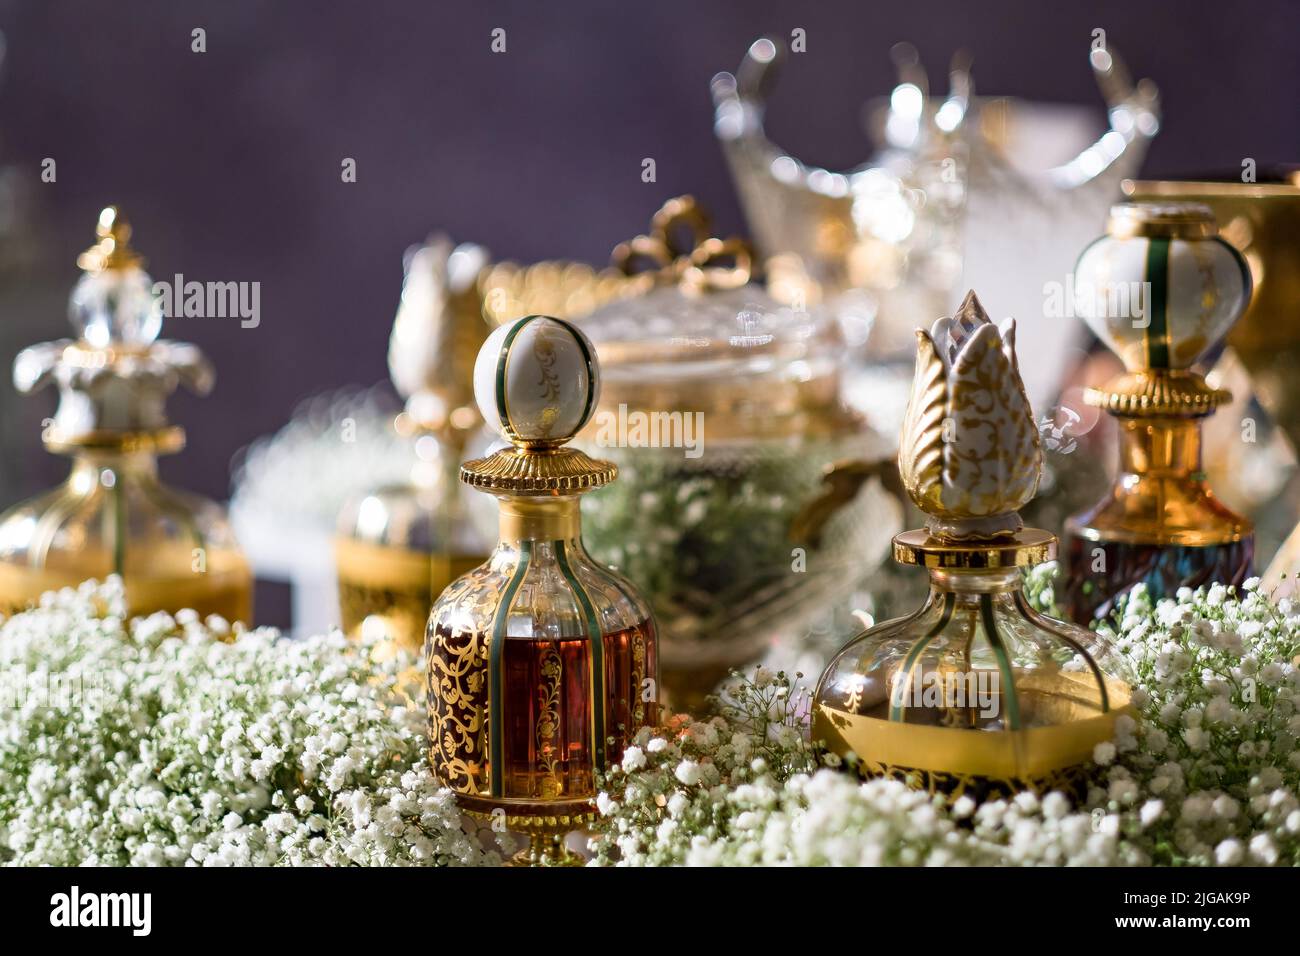 Una varietà di profumi in vetro decorativo e bottiglie di cristallo su un tavolo con il respiro del bambino. Servizio di preparazione all'ingresso per gli ospiti di un matrimonio arabo. Foto Stock